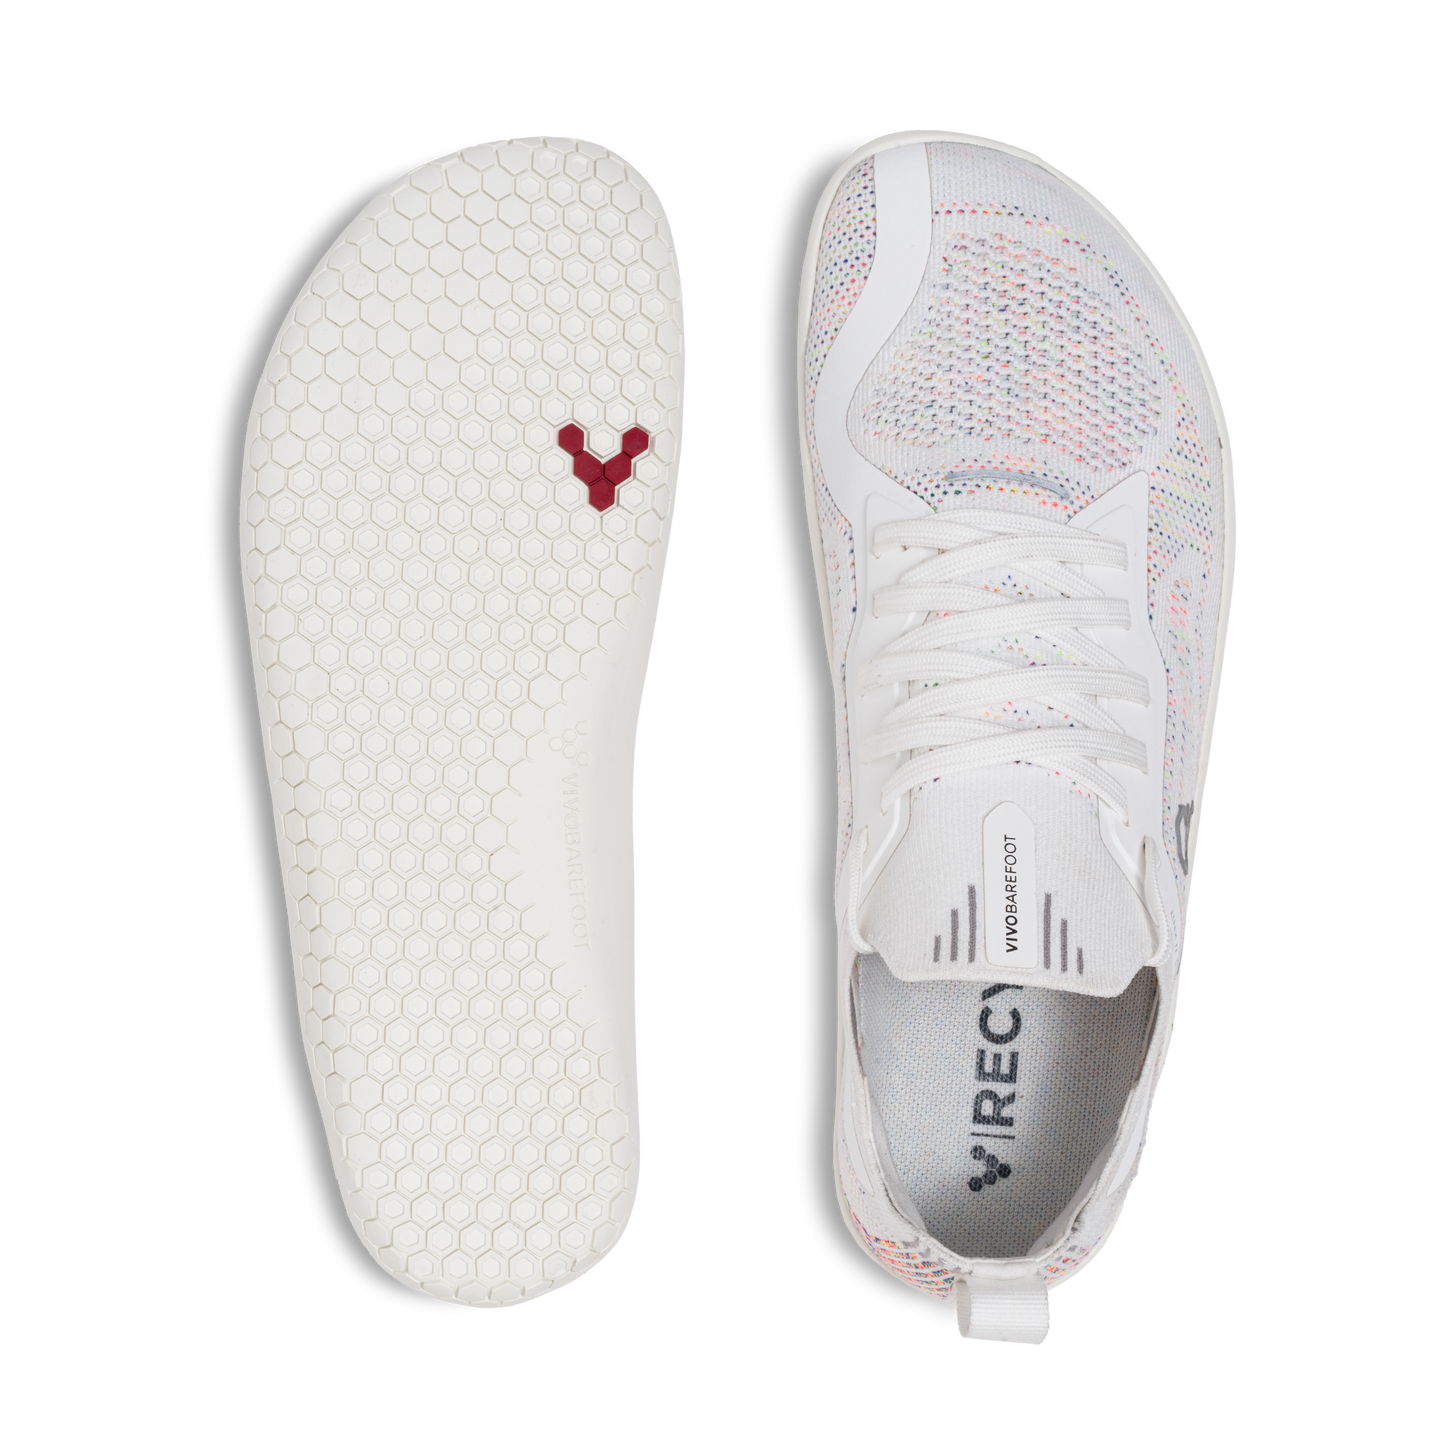 Vivobarefoot Primus Lite Knit i varianten 'Bright White Iridescent' for voksne kvinder. Skoen fremviser en letvægt, barfodslignende pasform med en specialdesignet sål og en øvre del med iriserende mønster.